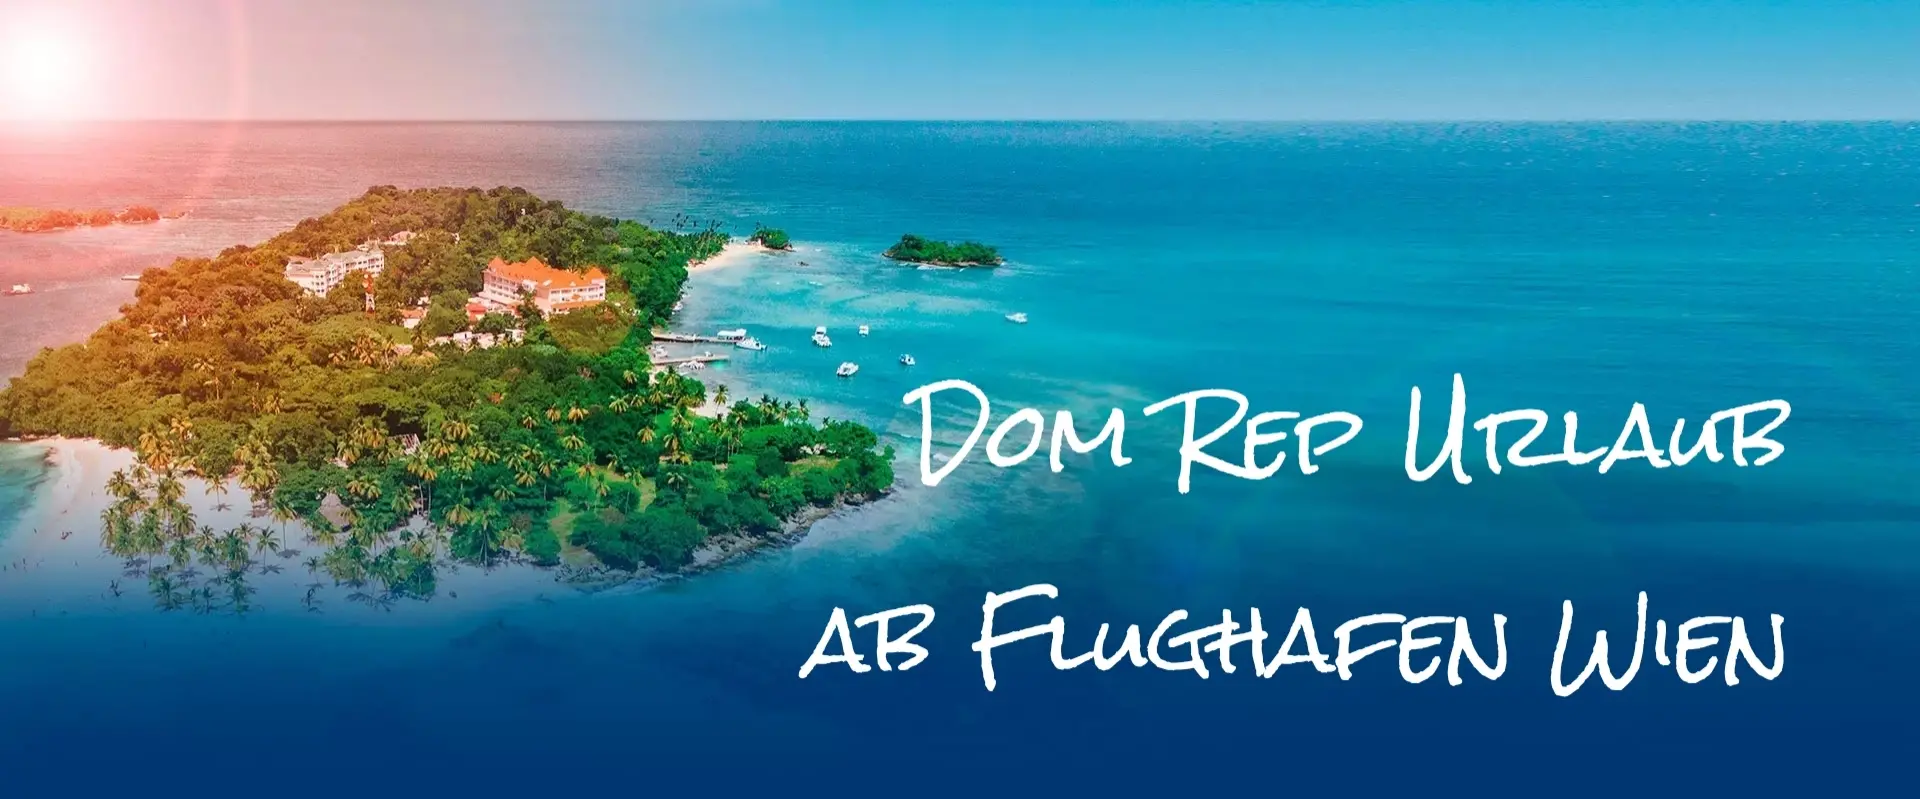 Dom Rep Urlaub ab Flughafen Wien in die Dominikanische Republik